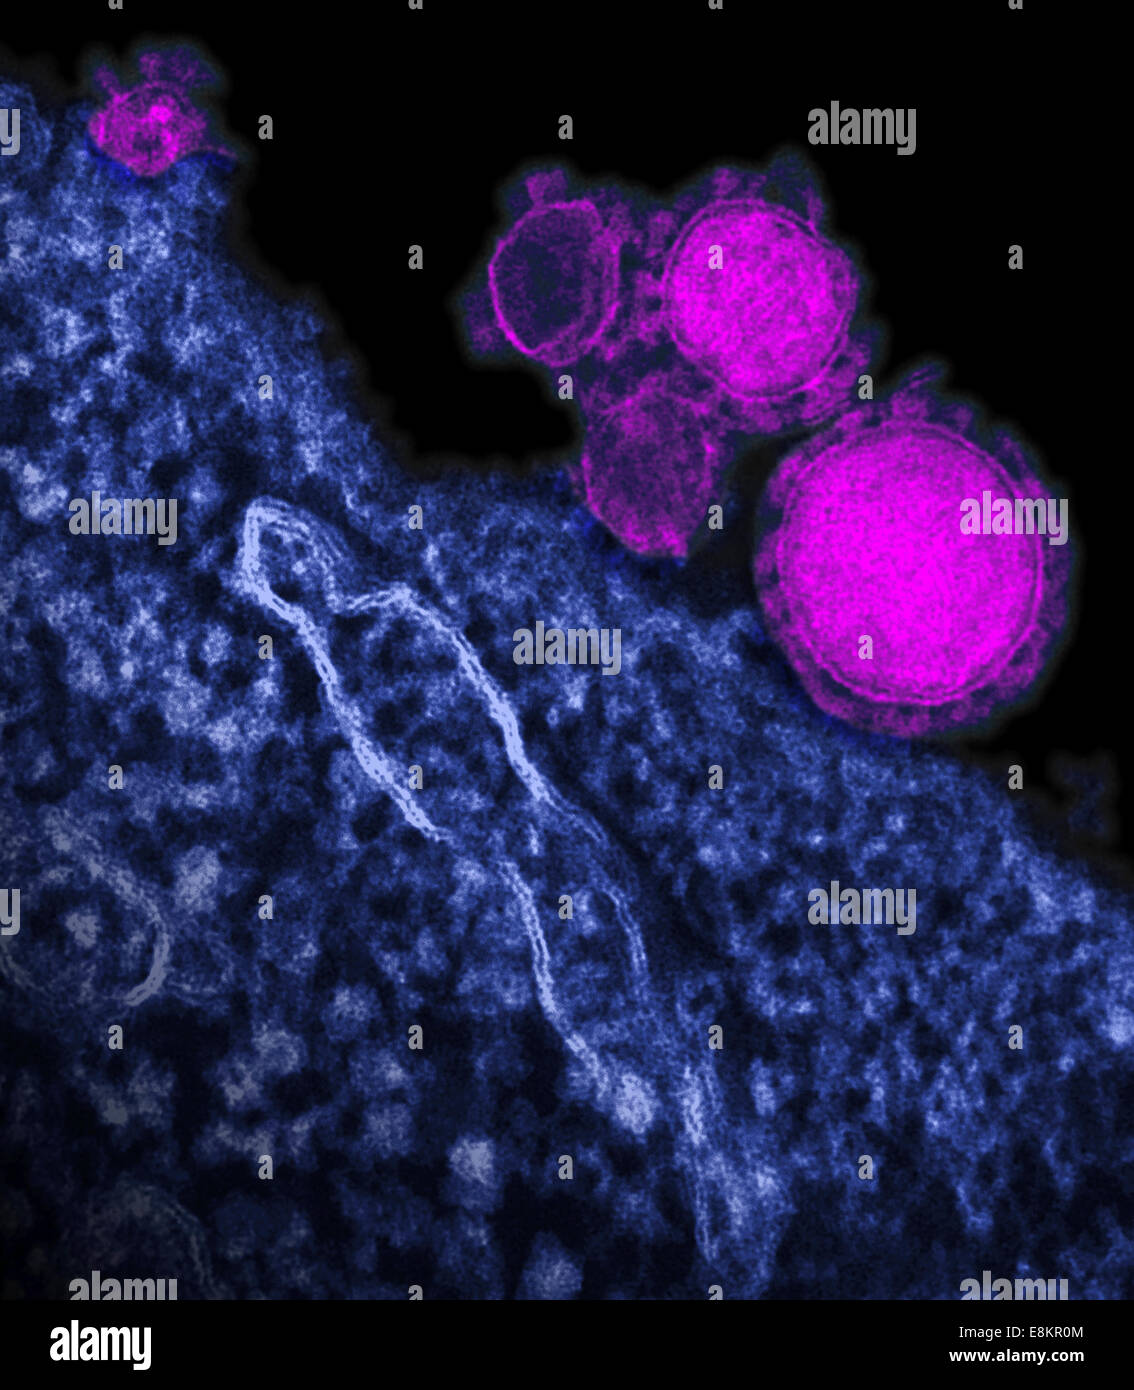 Eingefärbte Übertragung Elektronen Schliffbild des Nahen Osten respiratorisches Syndrom Coronavirus Partikel. Stockfoto